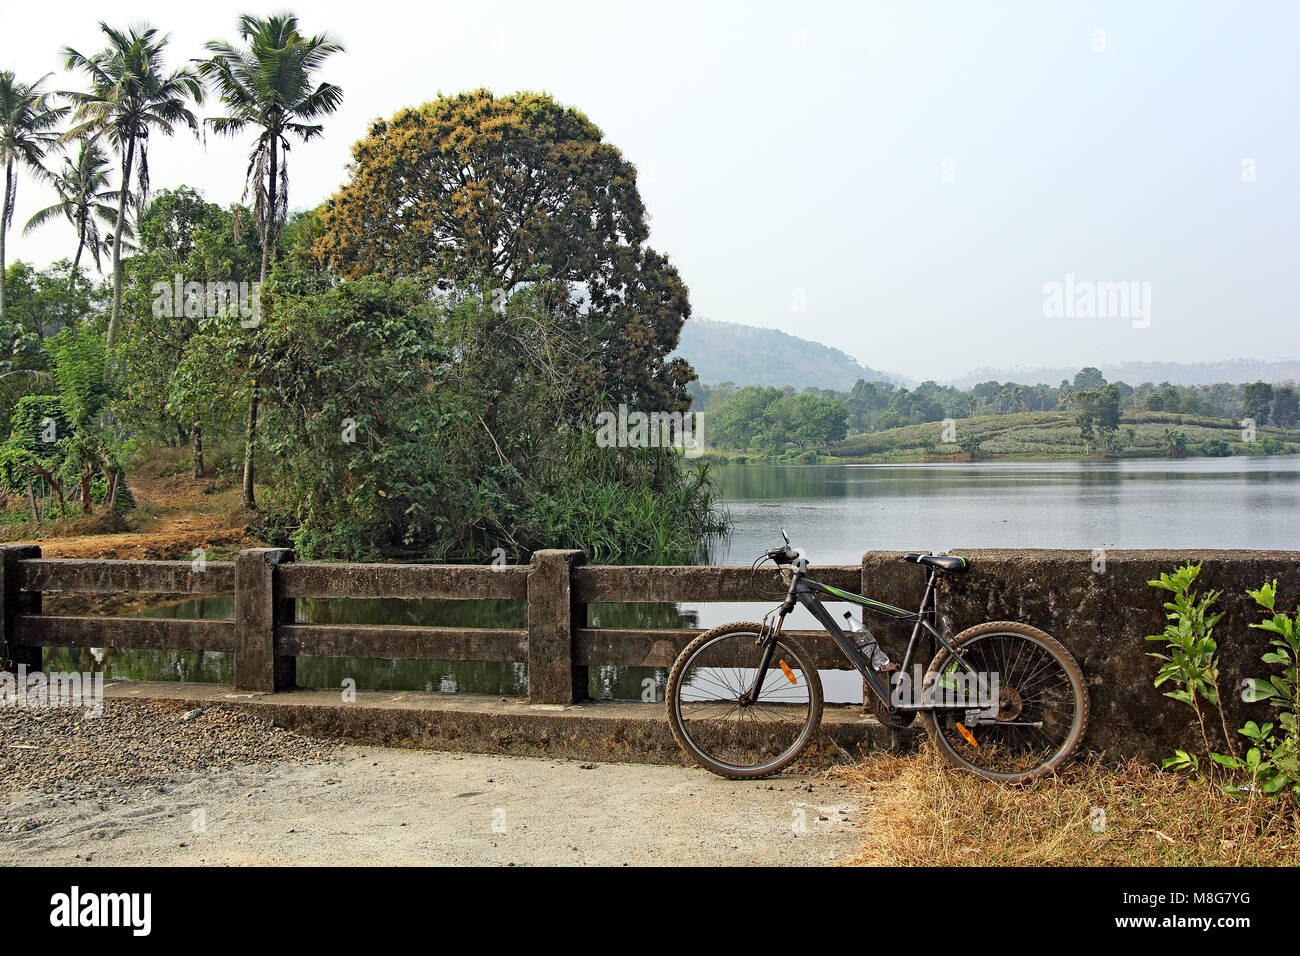 Bicicleta Bicicleta todoterreno aparcado mientras a lo largo de la pintoresca campiña con lagos y lagunas en Kerala, India Foto de stock